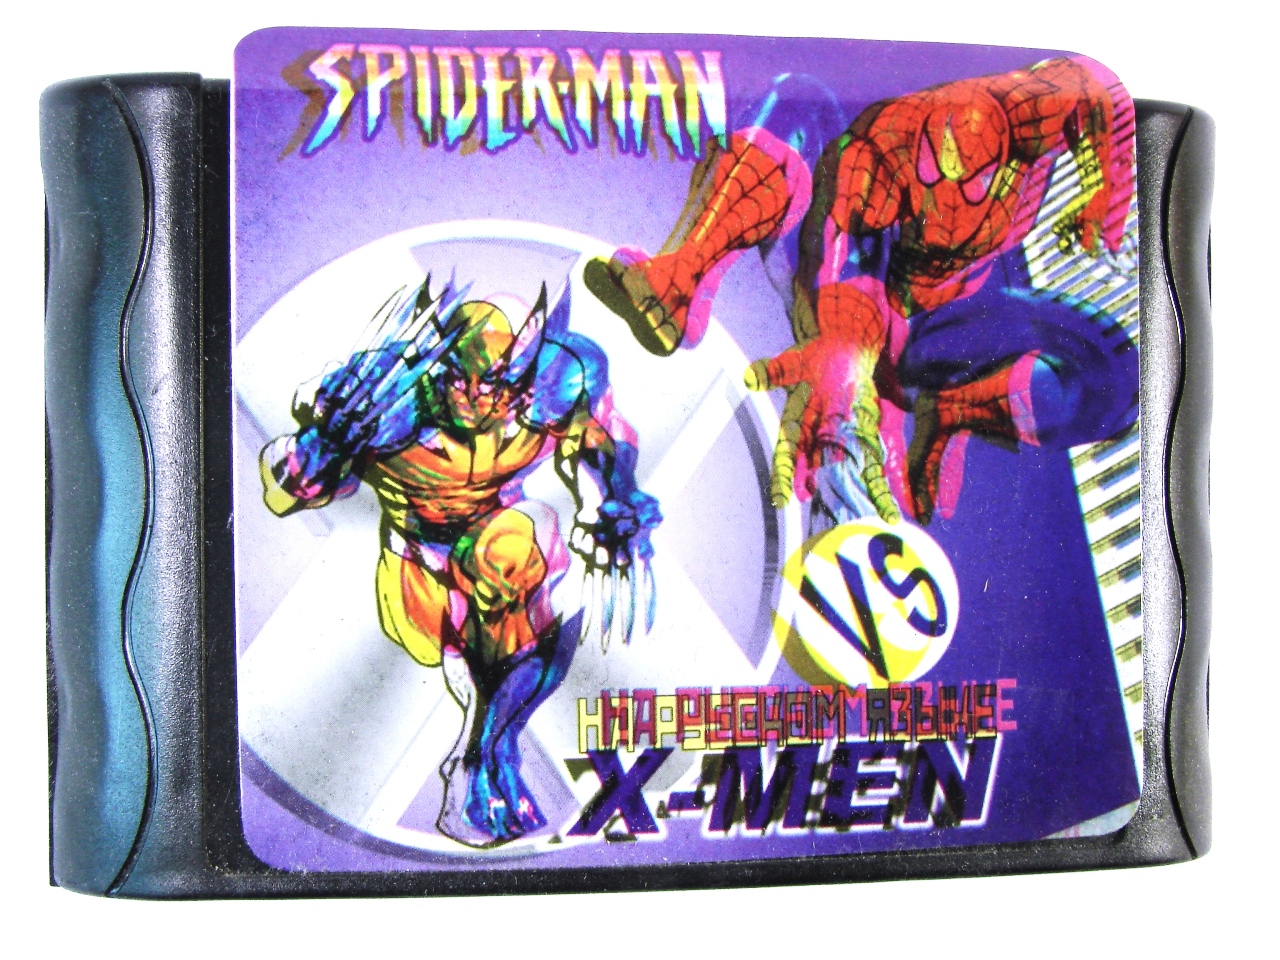   Sega Spider-Man vs X-men (Sega)